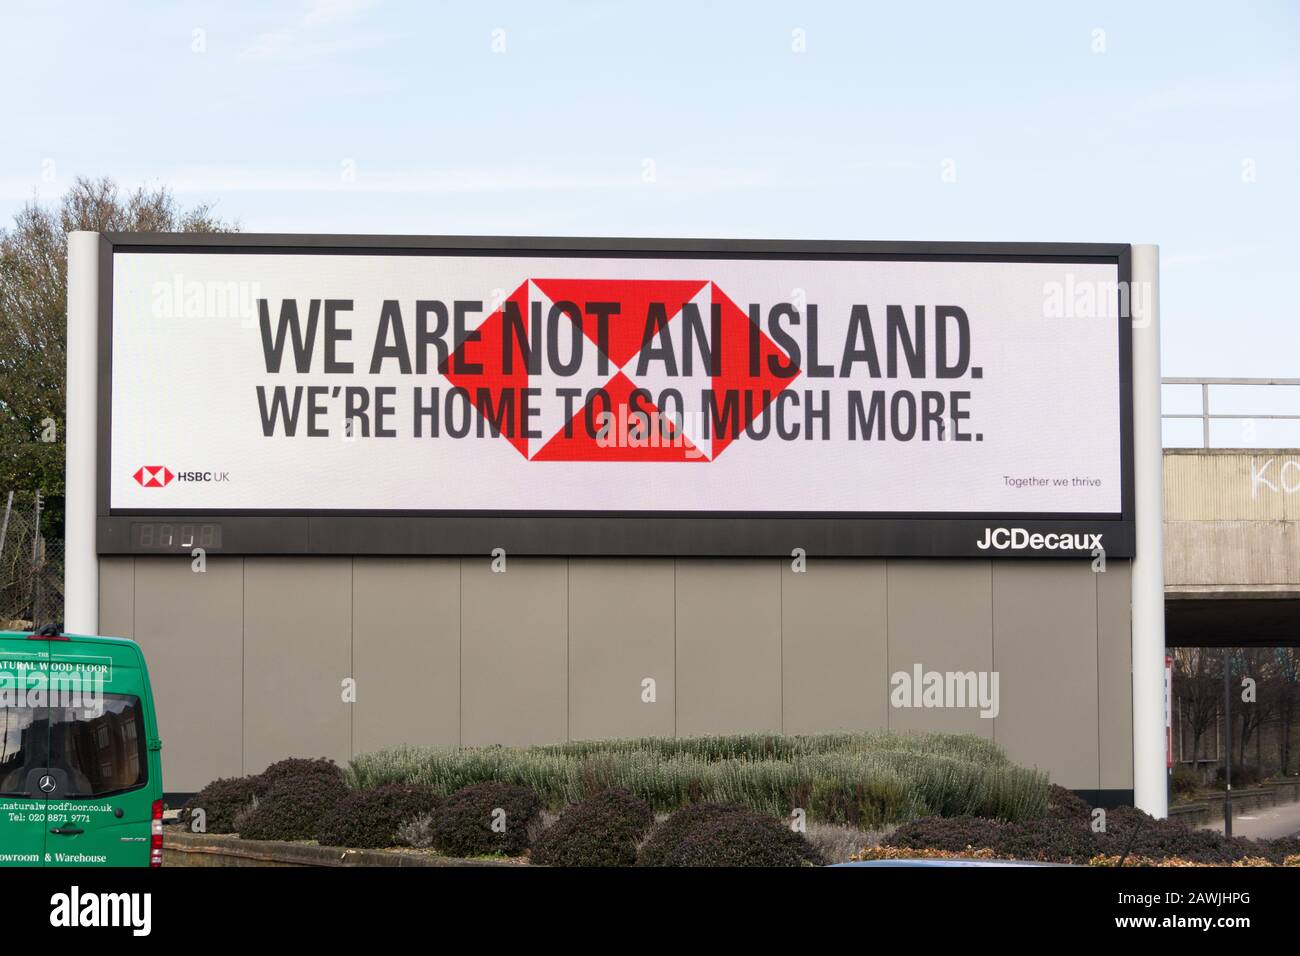 HSBC We n'est pas une campagne publicitaire de l'île de Wunderman Thompson sur un panneau d'affichage électronique JCDecaux, Wandsworth, Londres, Angleterre, Royaume-Uni Banque D'Images